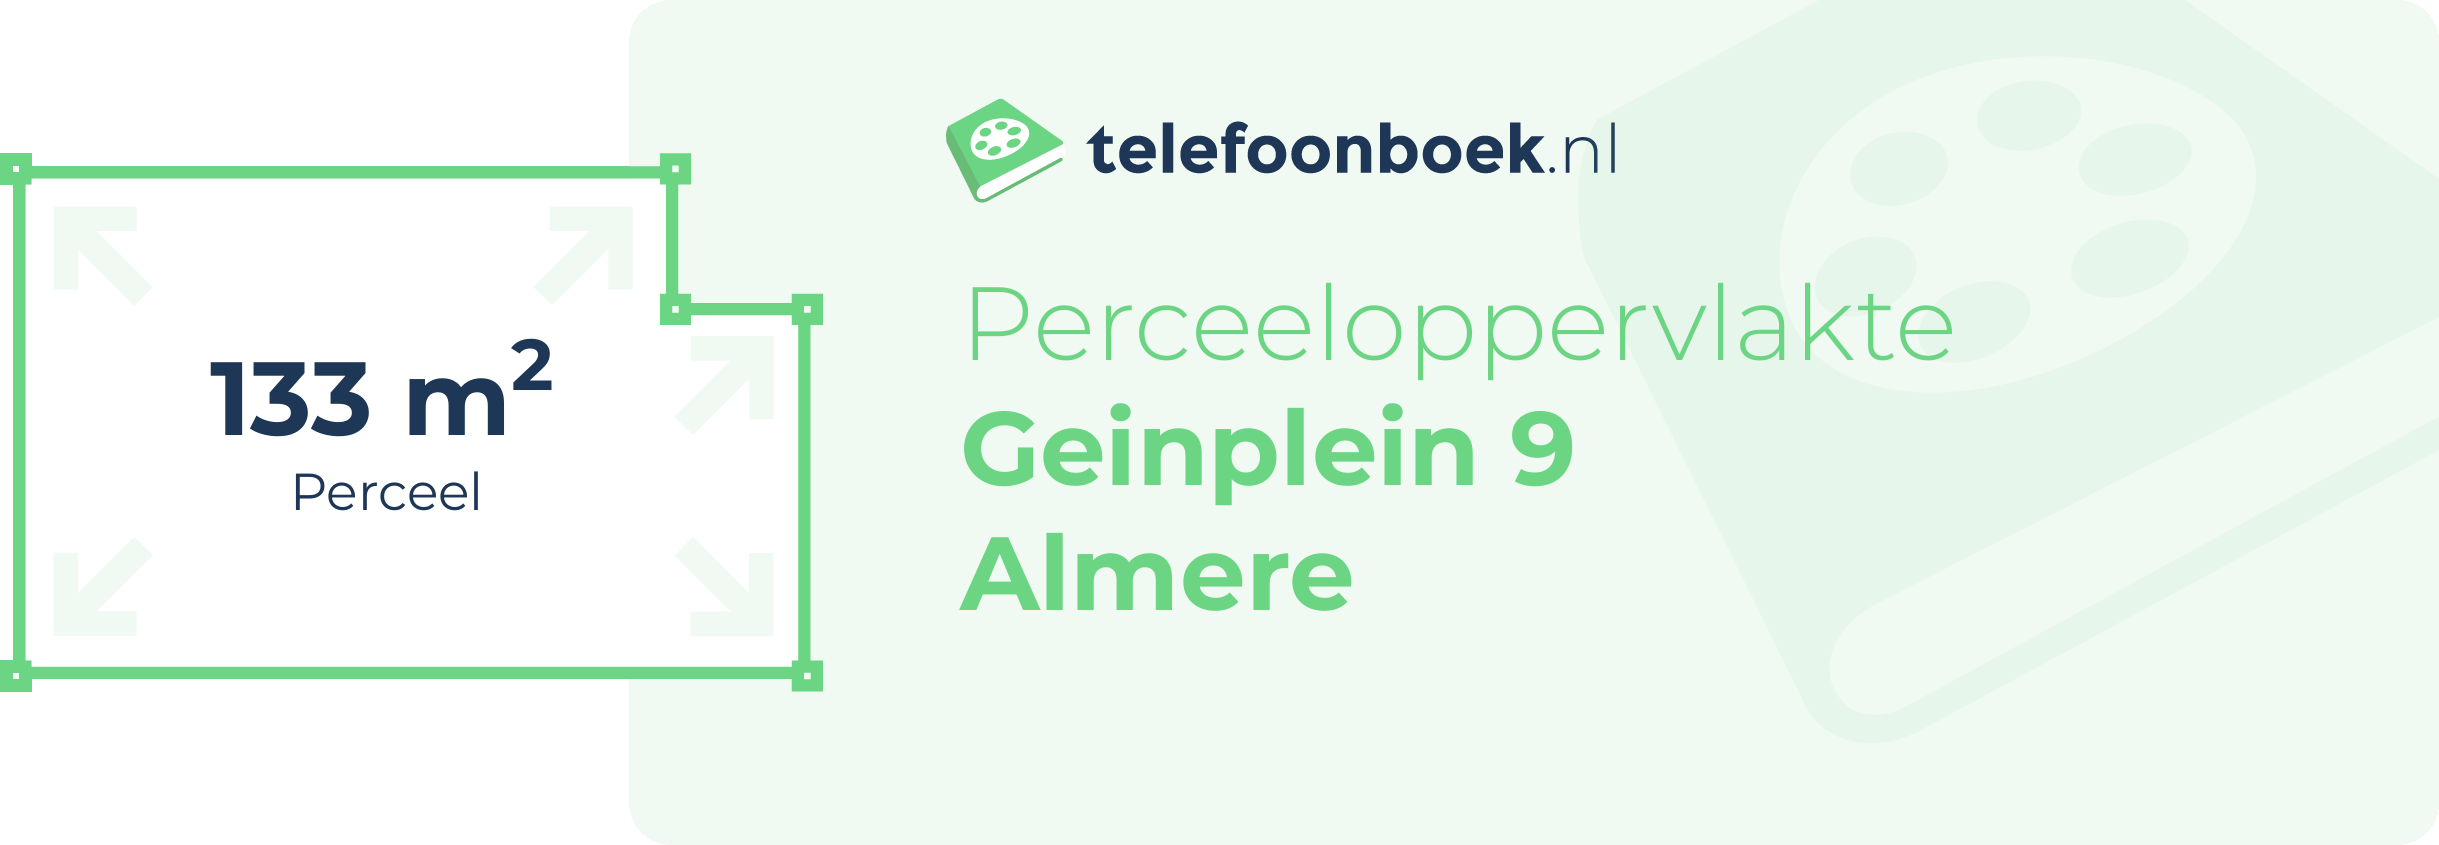 Perceeloppervlakte Geinplein 9 Almere